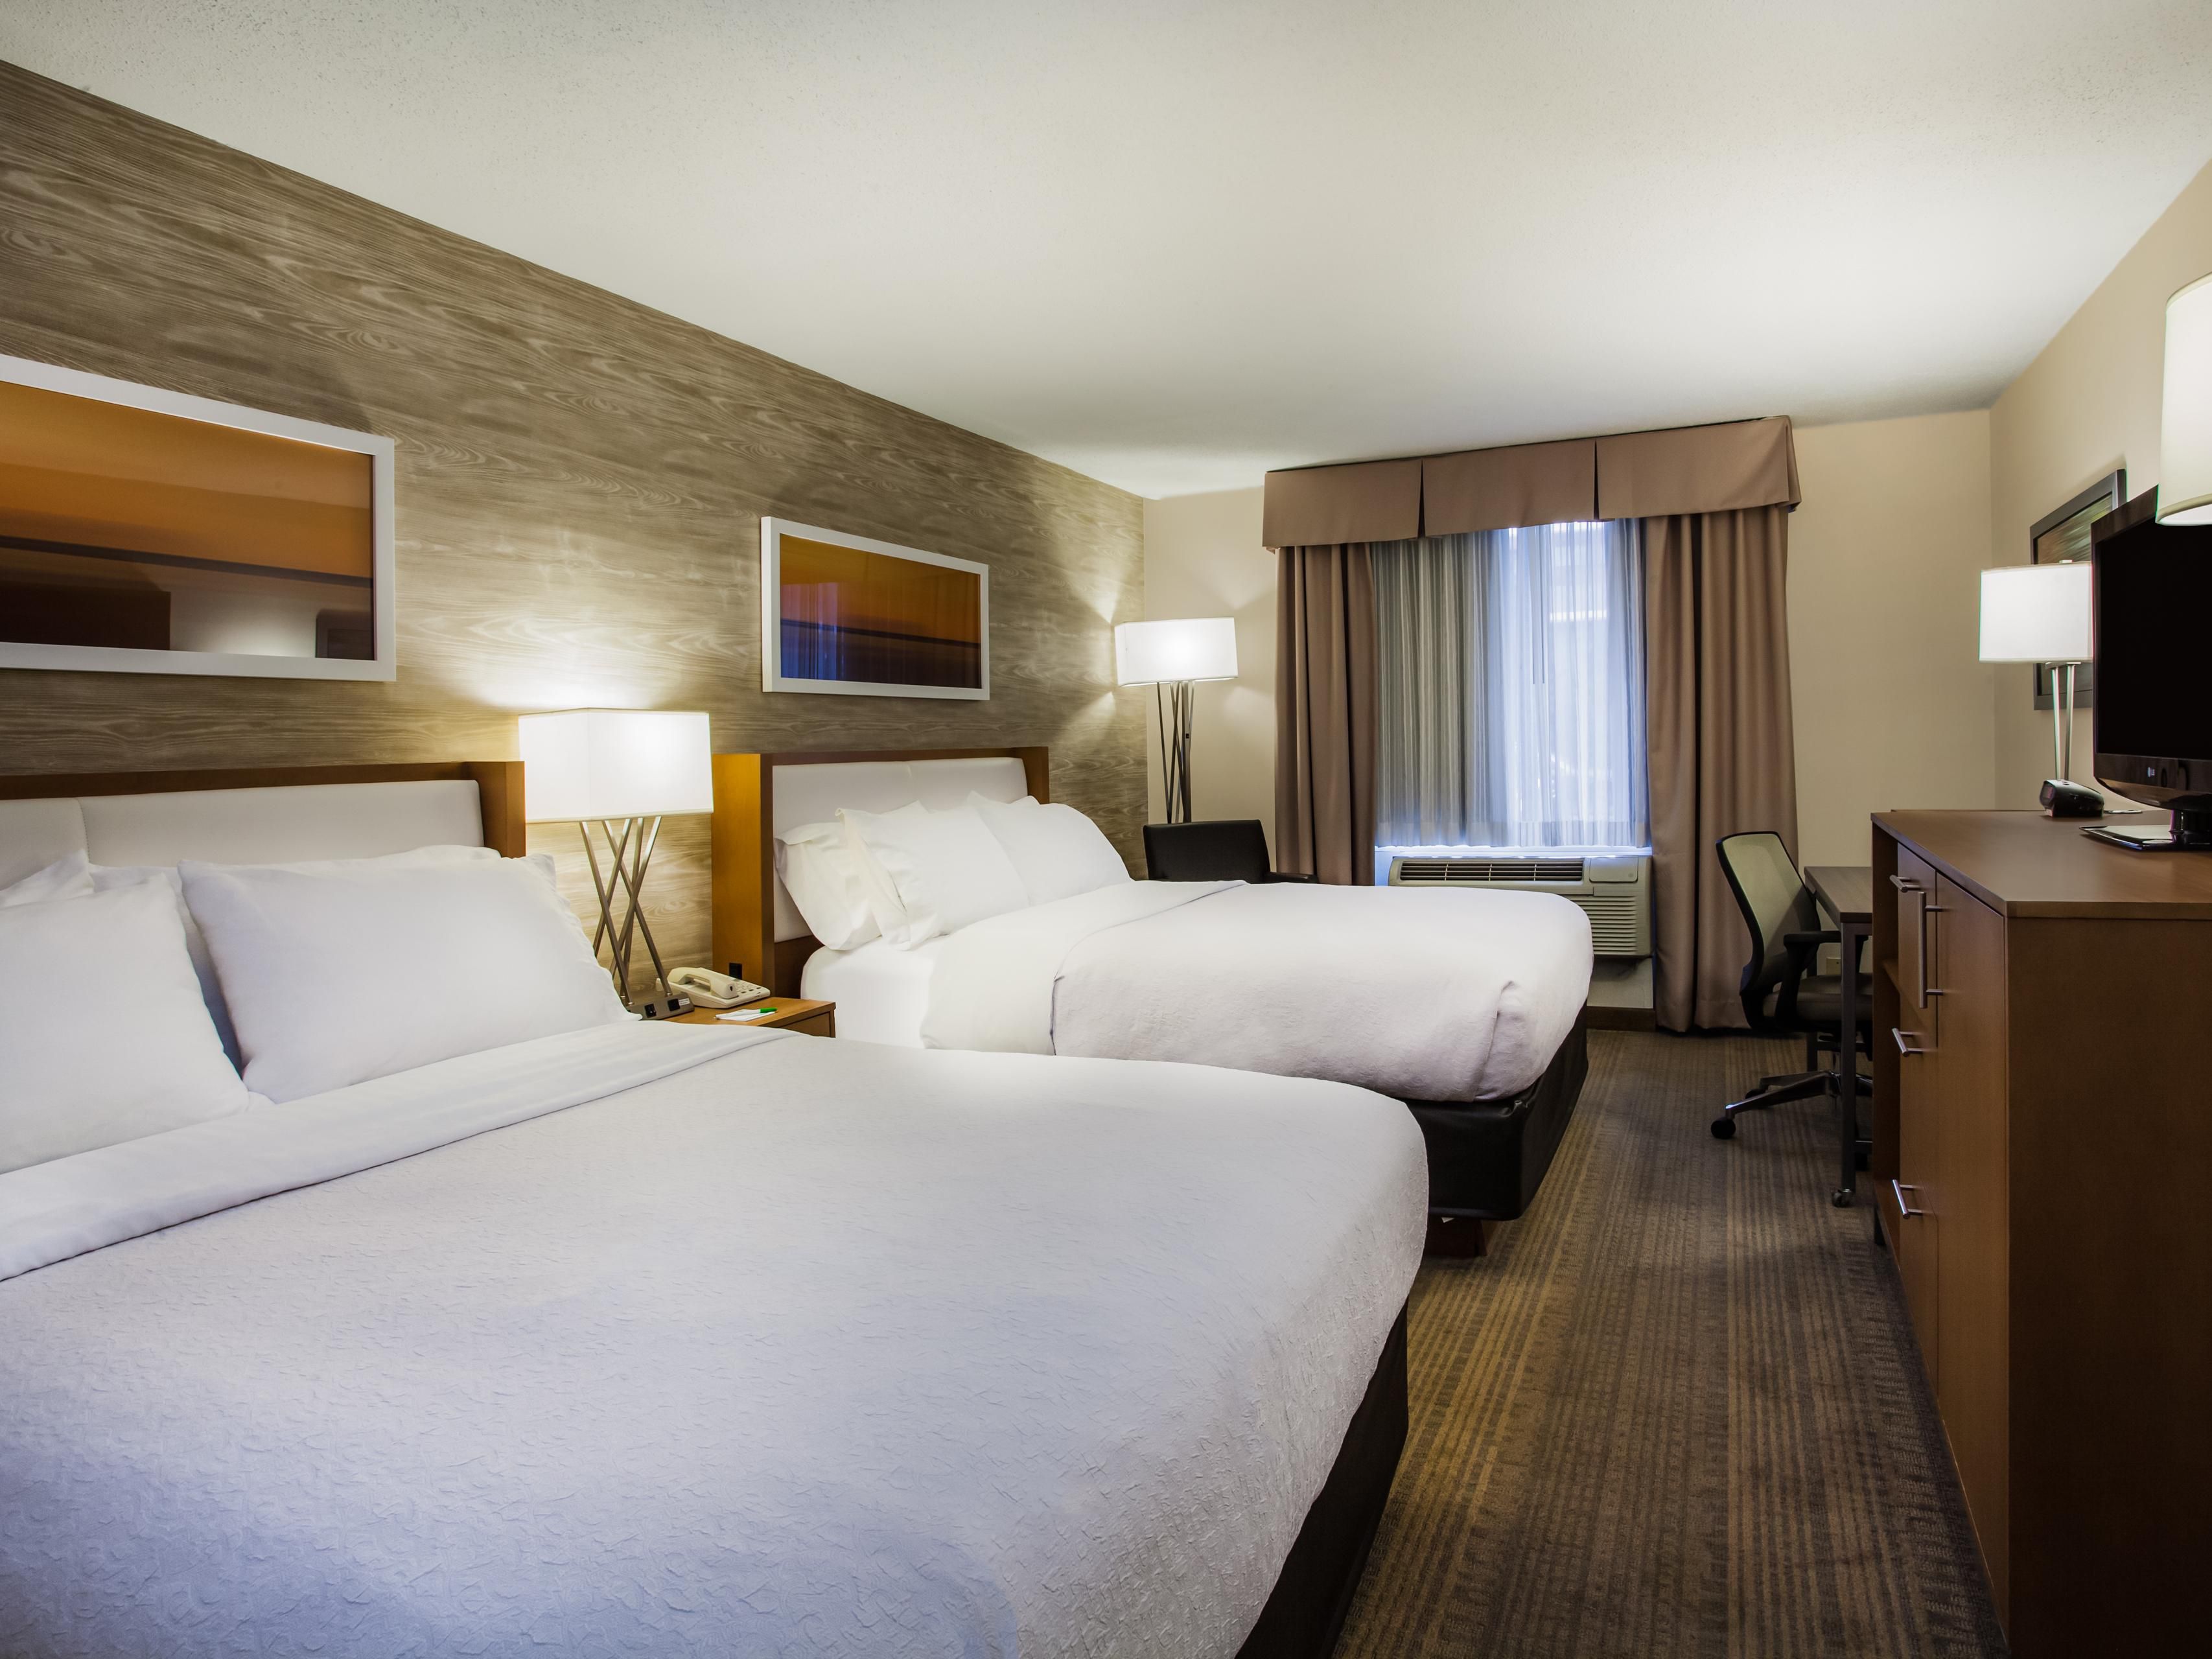 Habitaciones en hoteles Holiday Inn